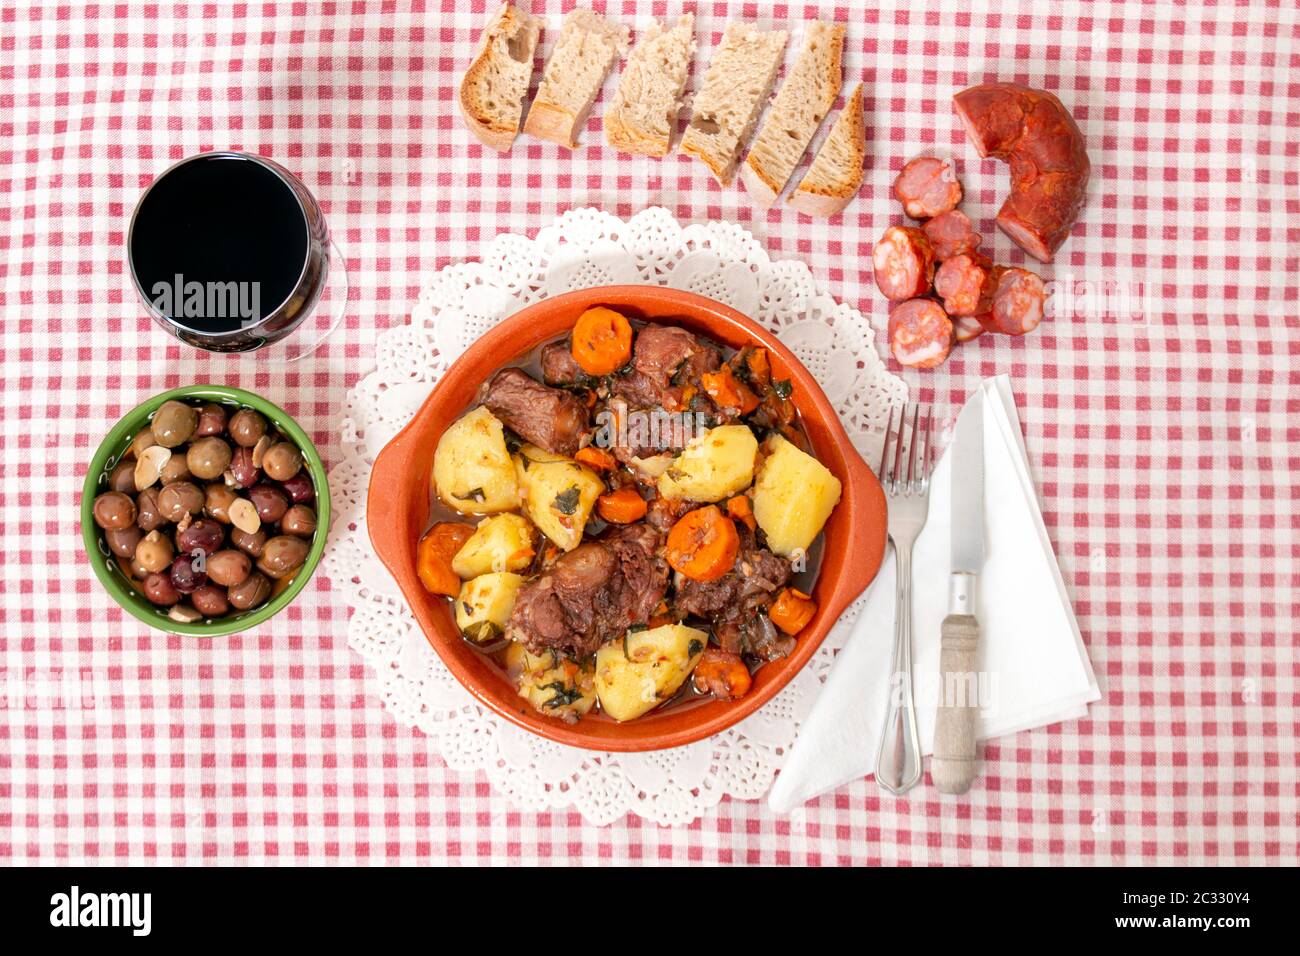 Repas rustique traditionnel de queue de bœuf avec pomme de terre et carotte de la région de l'Alentejo, Portugal. Banque D'Images